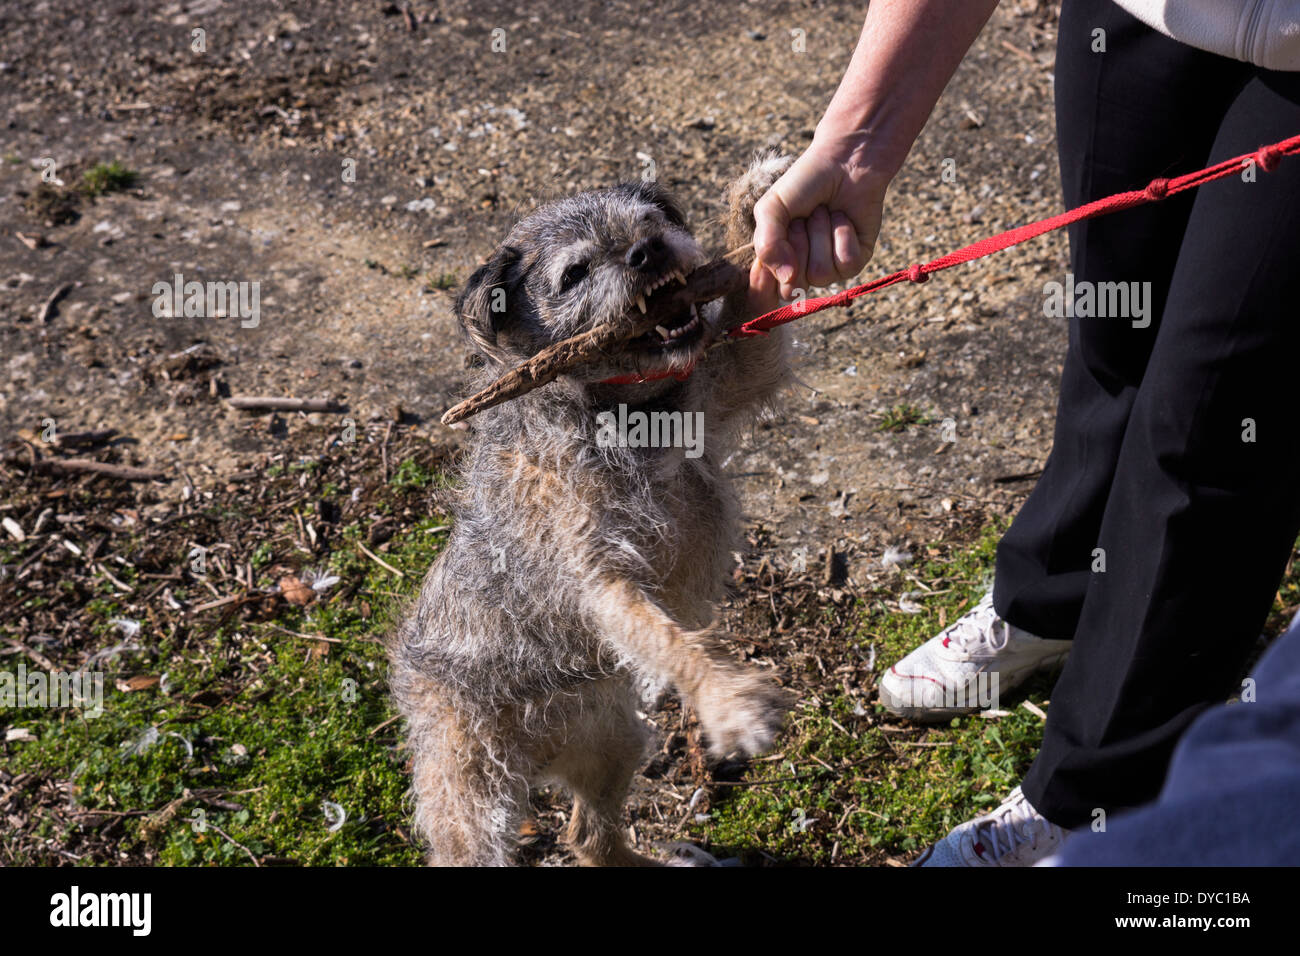 BORDER TERRIER cane Canine fuori a giocare tenendo un grosso bastone e prospettano zampa IT di tenere perché al guinzaglio masticare il suo bastone di legno Foto Stock